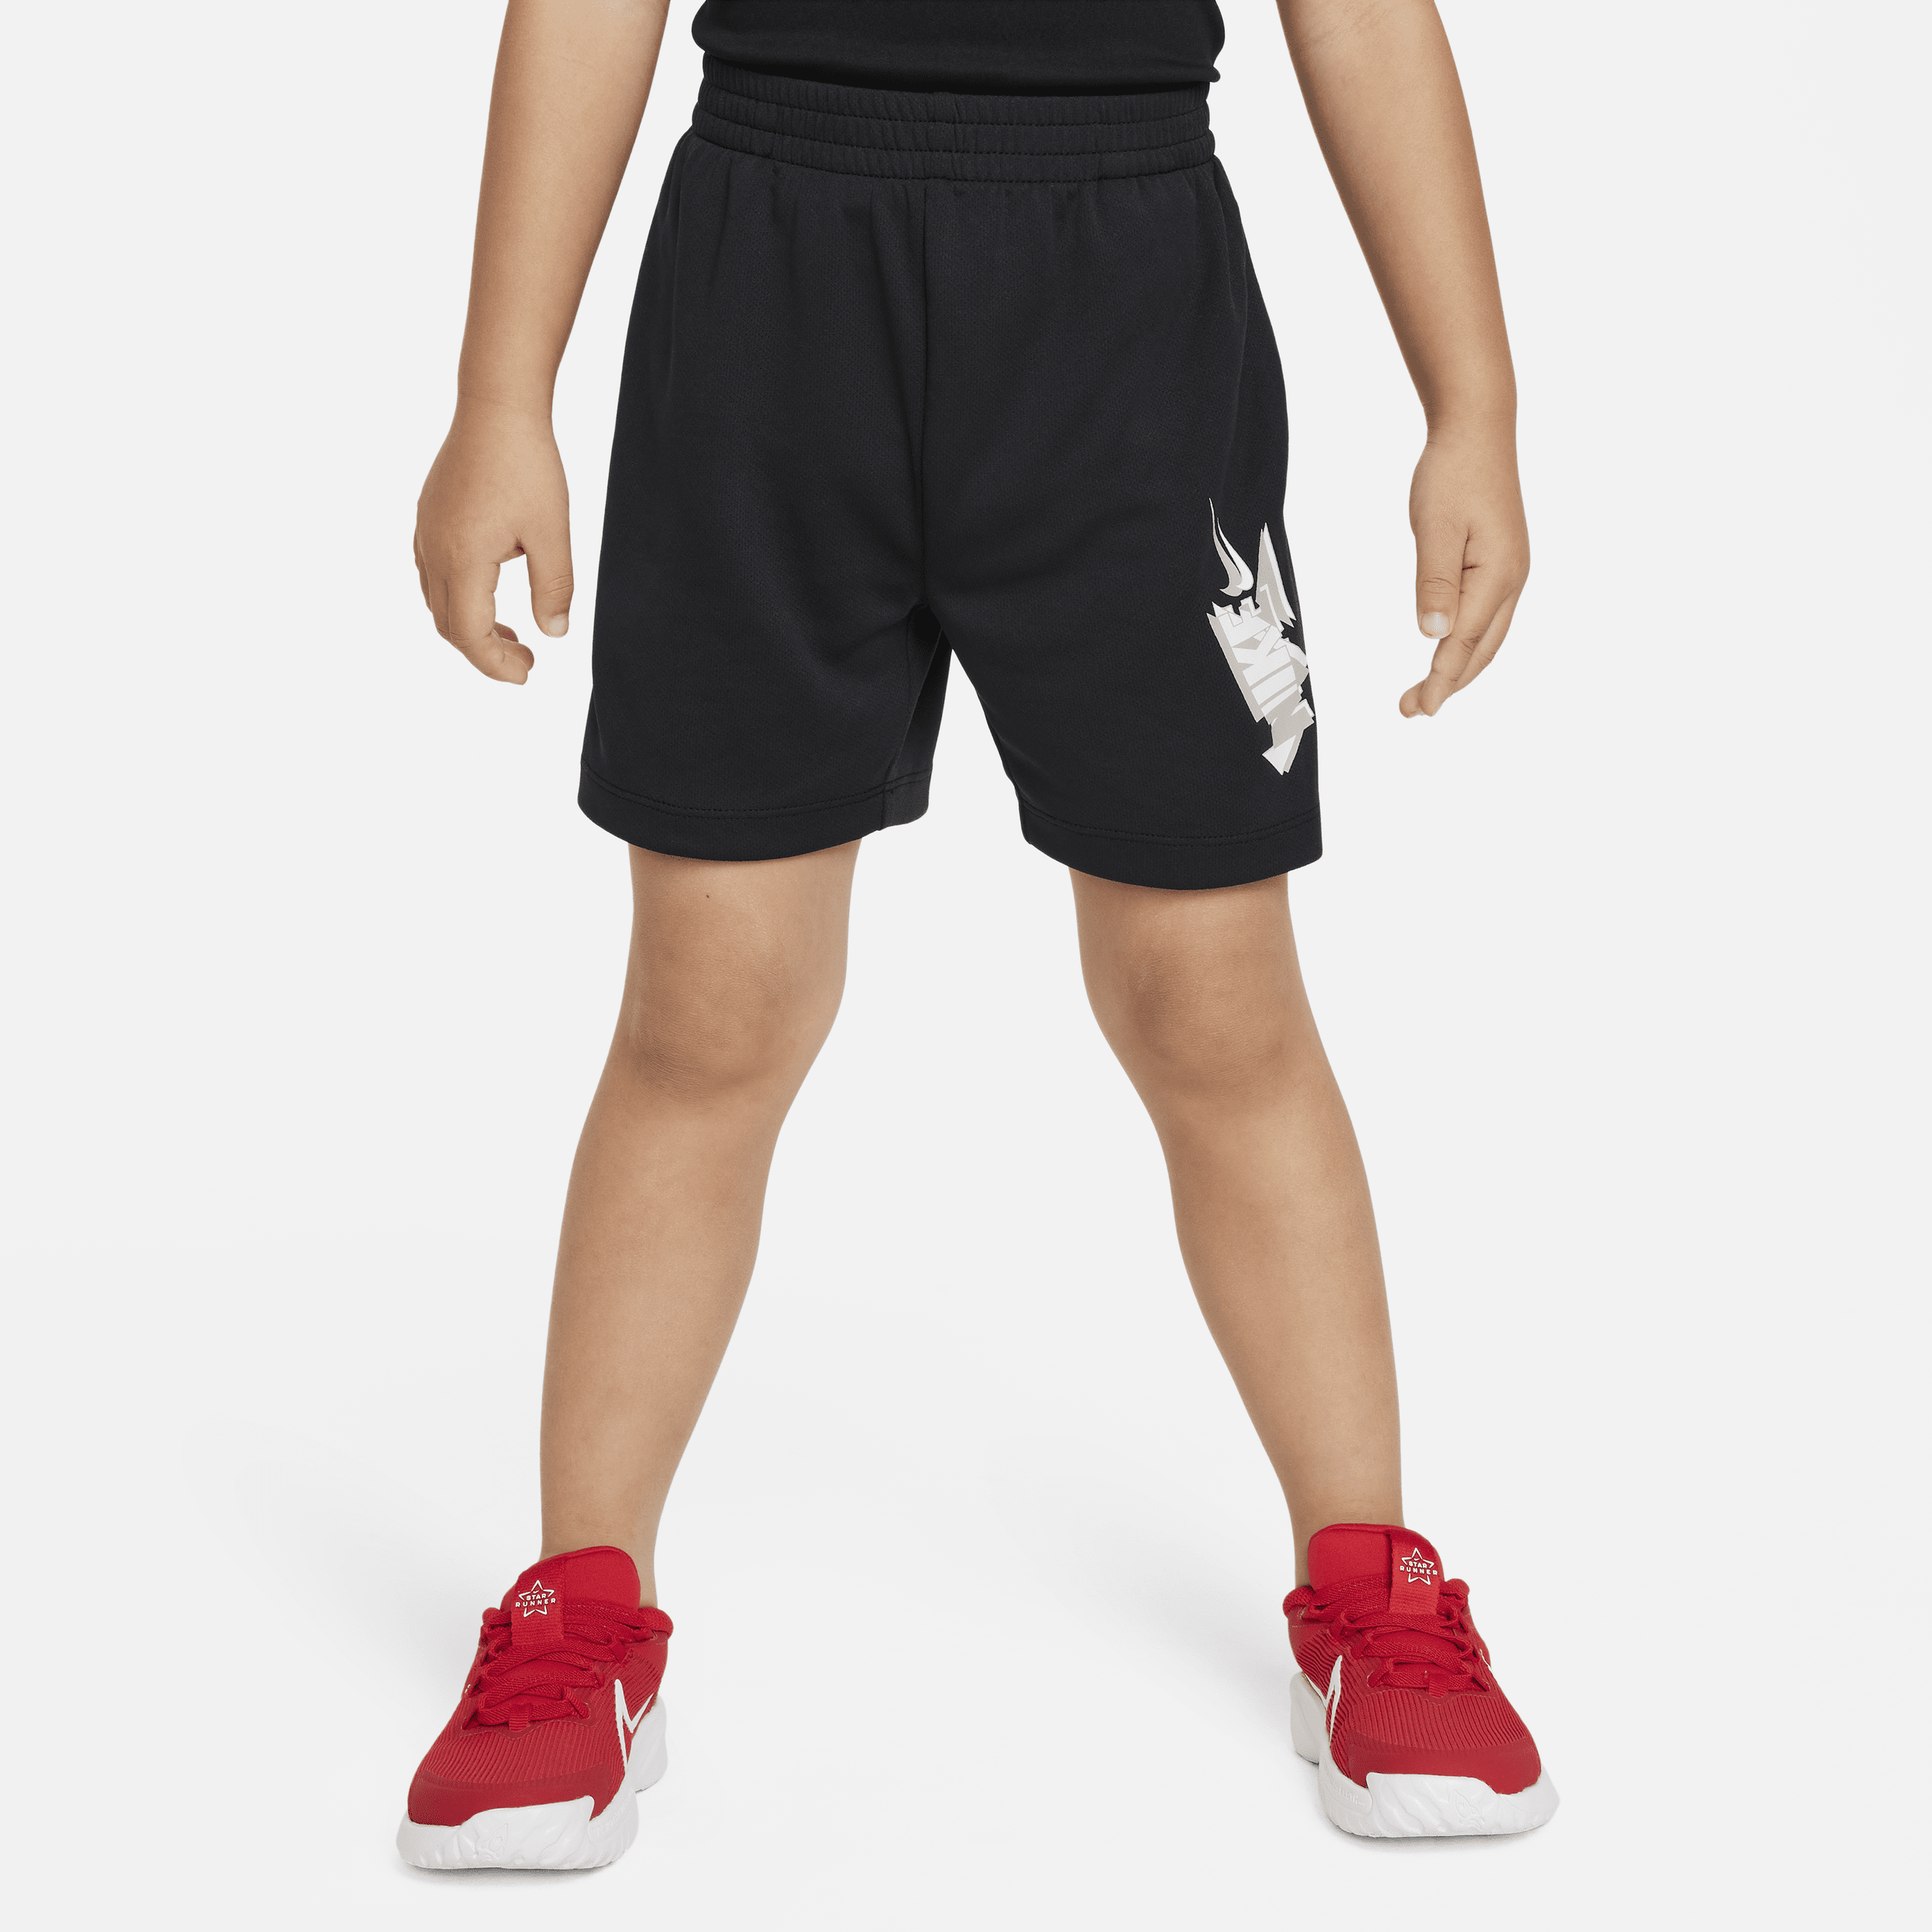 Nike Babies' Dri-fit Toddler Shorts In Black